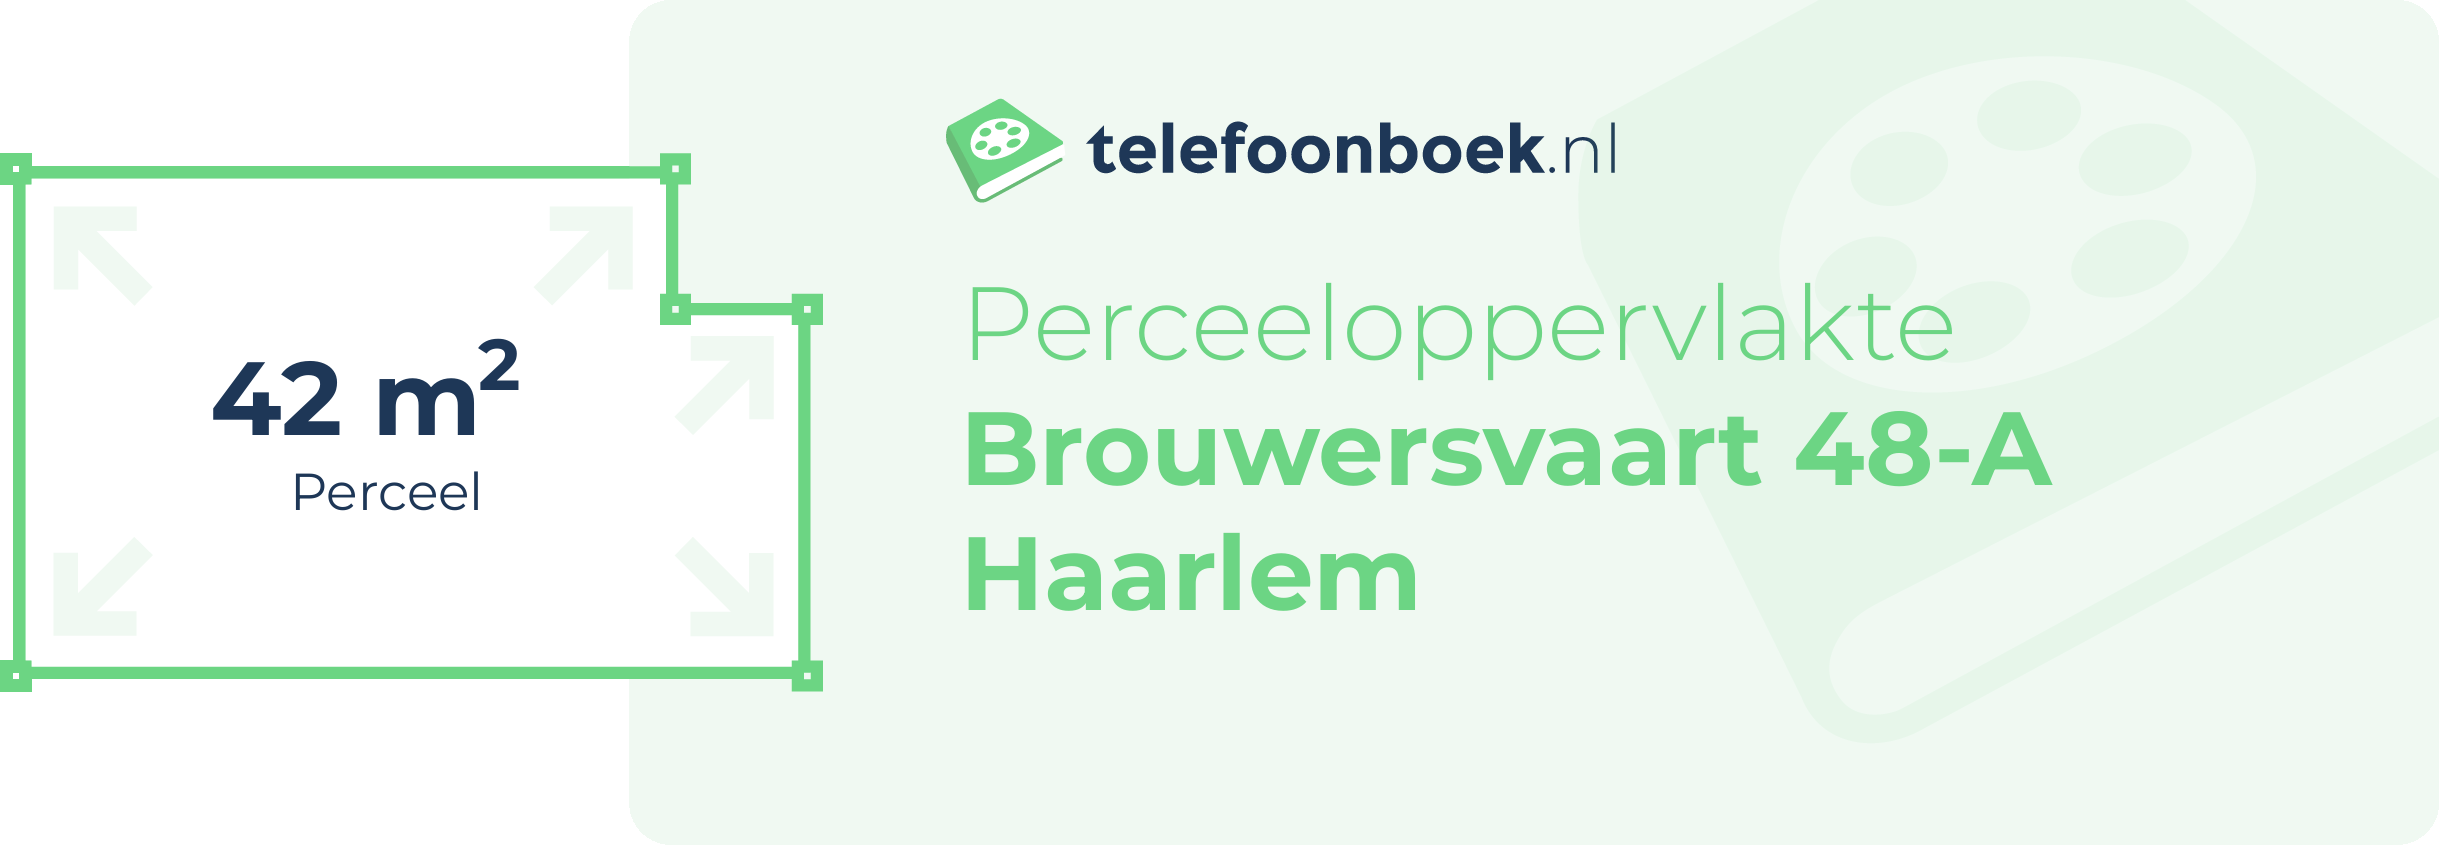 Perceeloppervlakte Brouwersvaart 48-A Haarlem